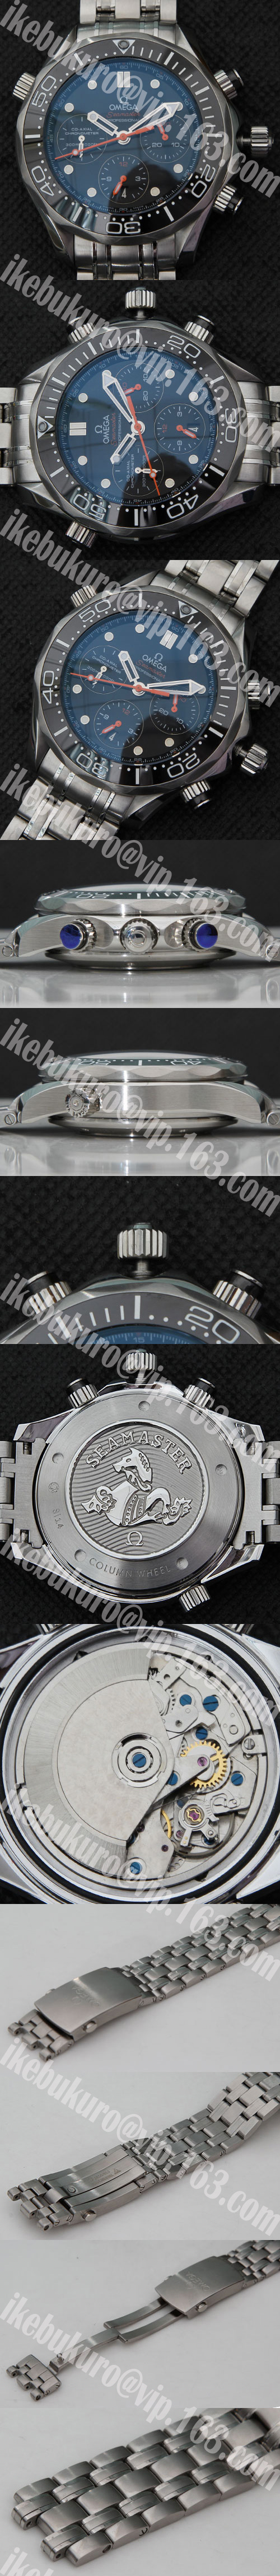 【44mm】オメガ シーマスター プロフェッショナル時計